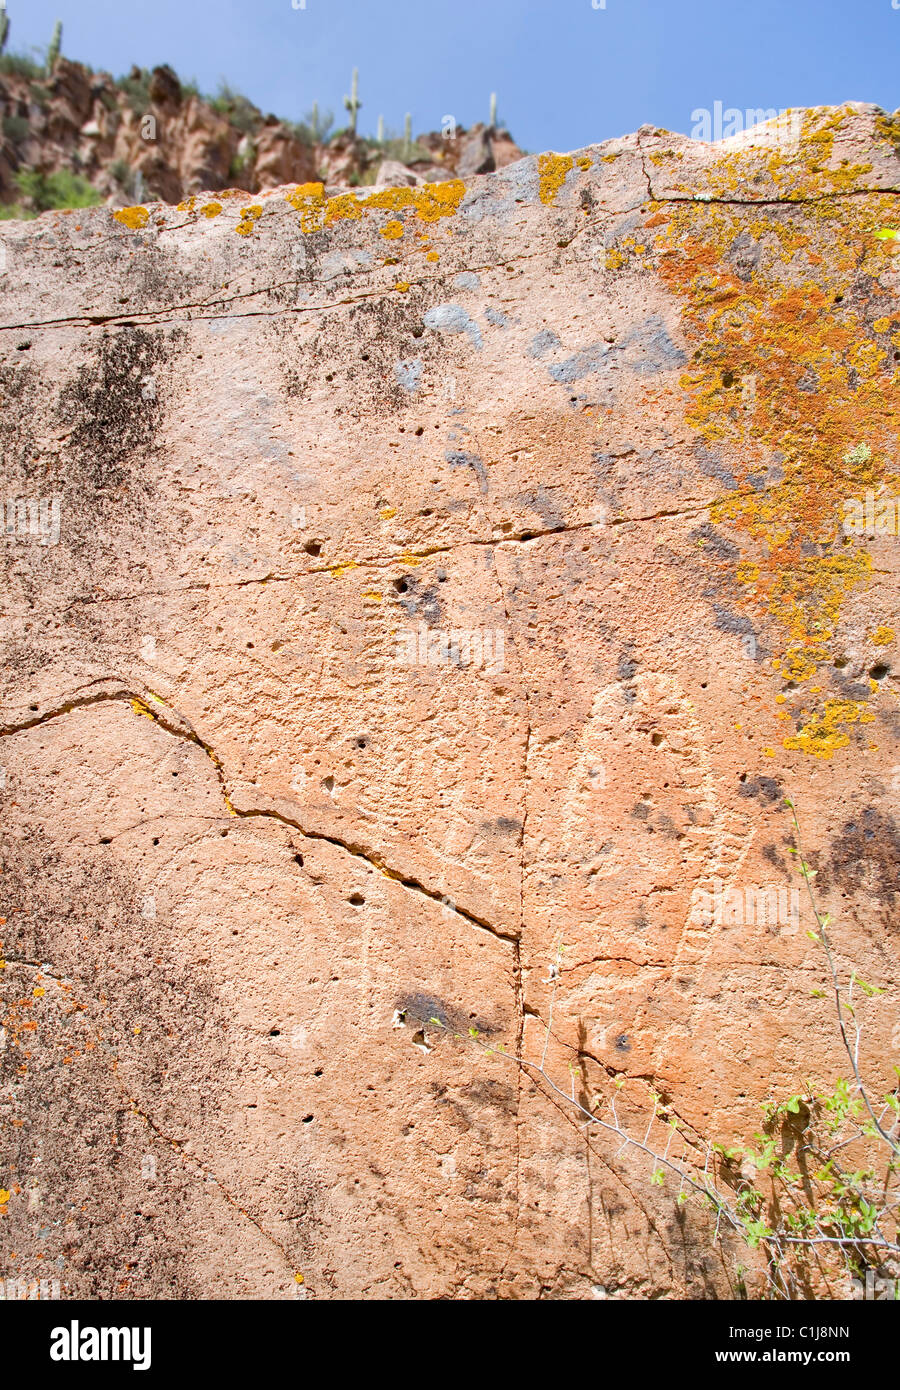 Un indio petroglifo mapa mostrando las fuentes de agua y un camino alrededor de un acantilado y cascada. Esto se comprobó a lo largo del río Salado. Foto de stock